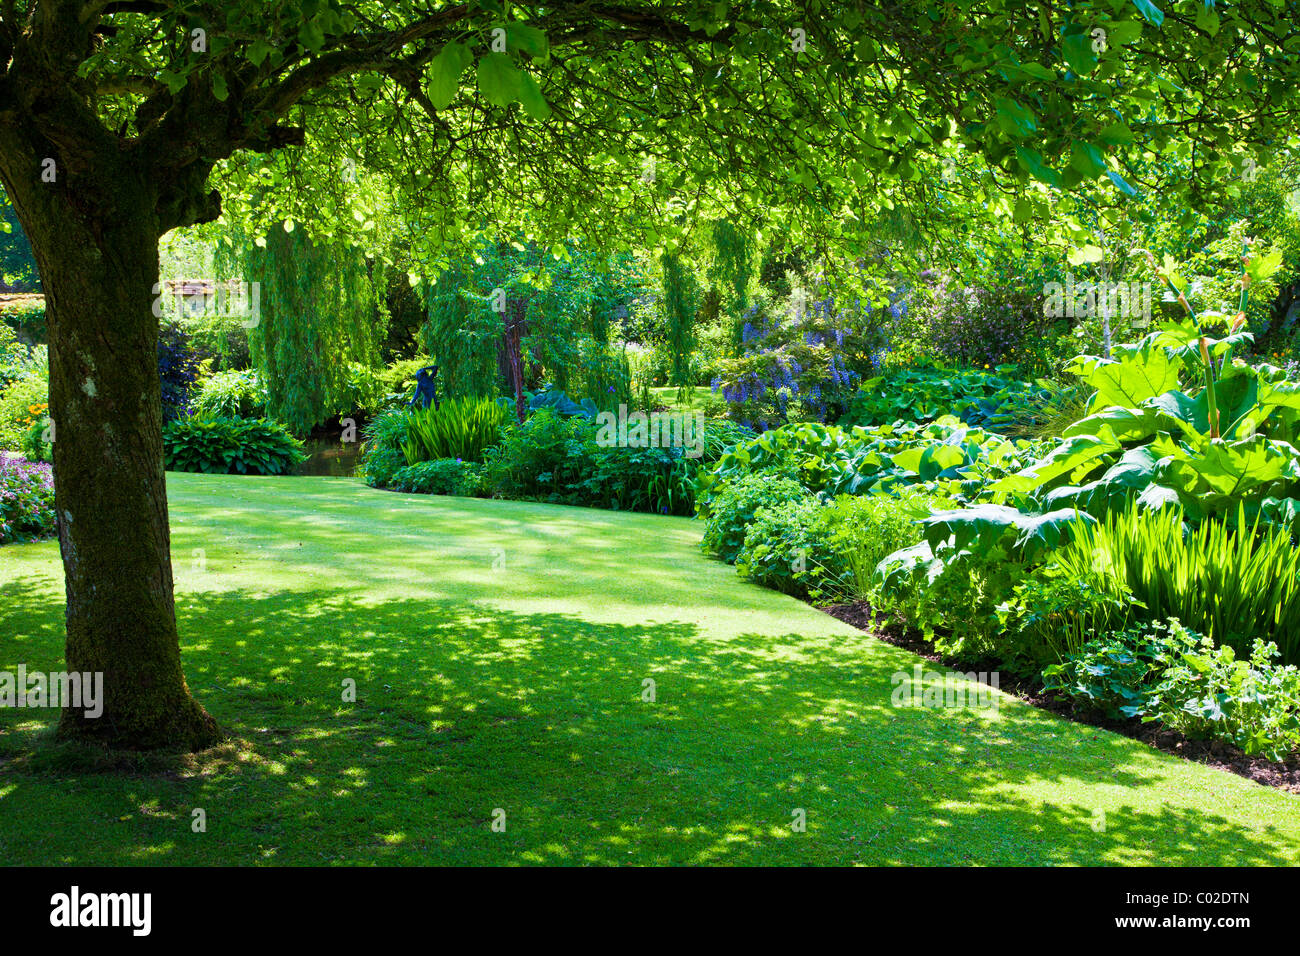 Eine schattige Ecke unter einem Baum am Ufer von einem Zierteich Garten in einem englischen Landhaus-Garten Stockfoto